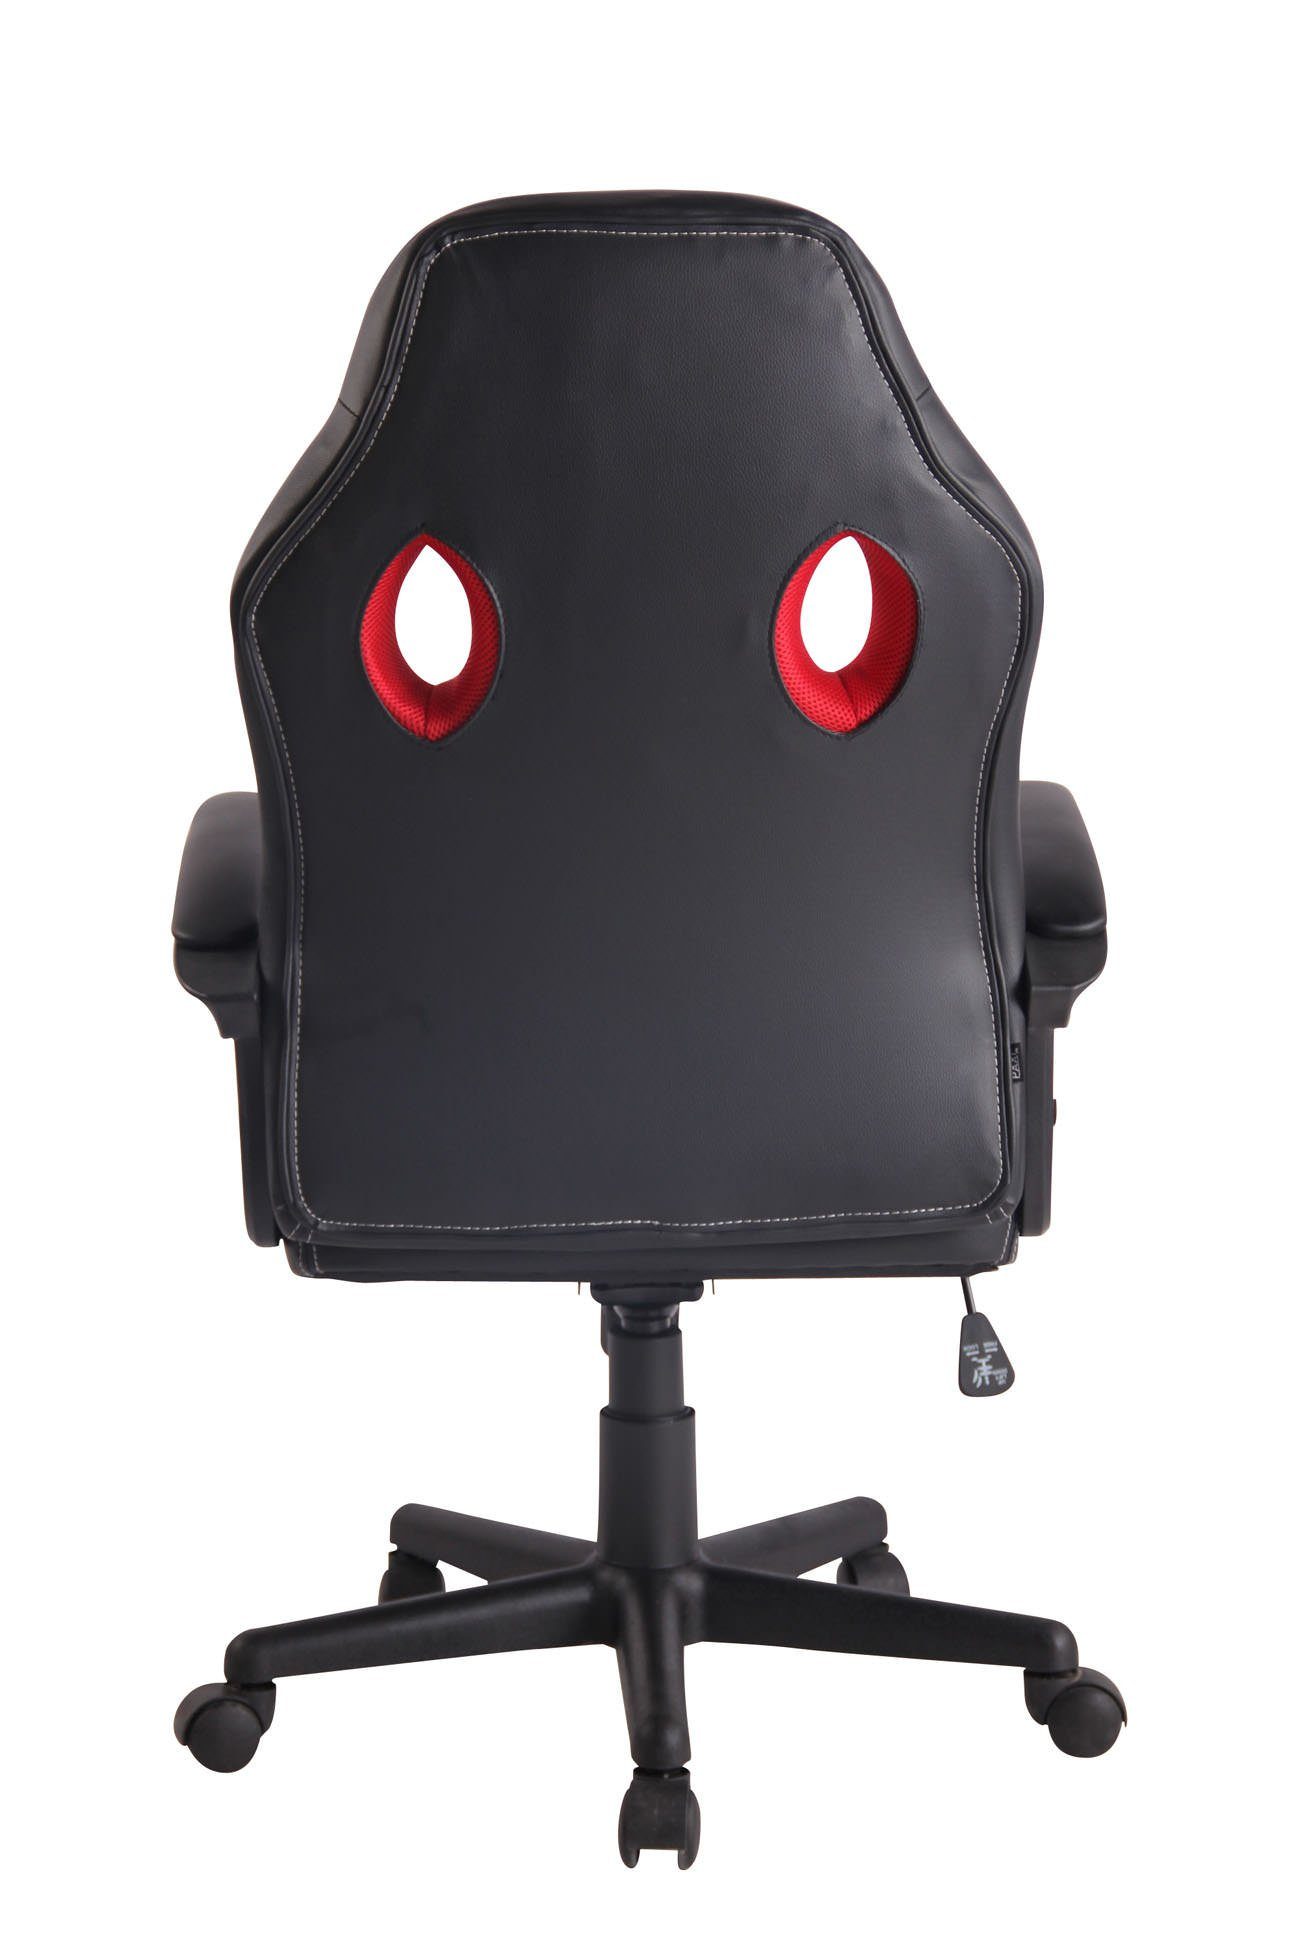 CLP Gaming drehbar Chair Elbing, und schwarz/rot höhenverstellbar